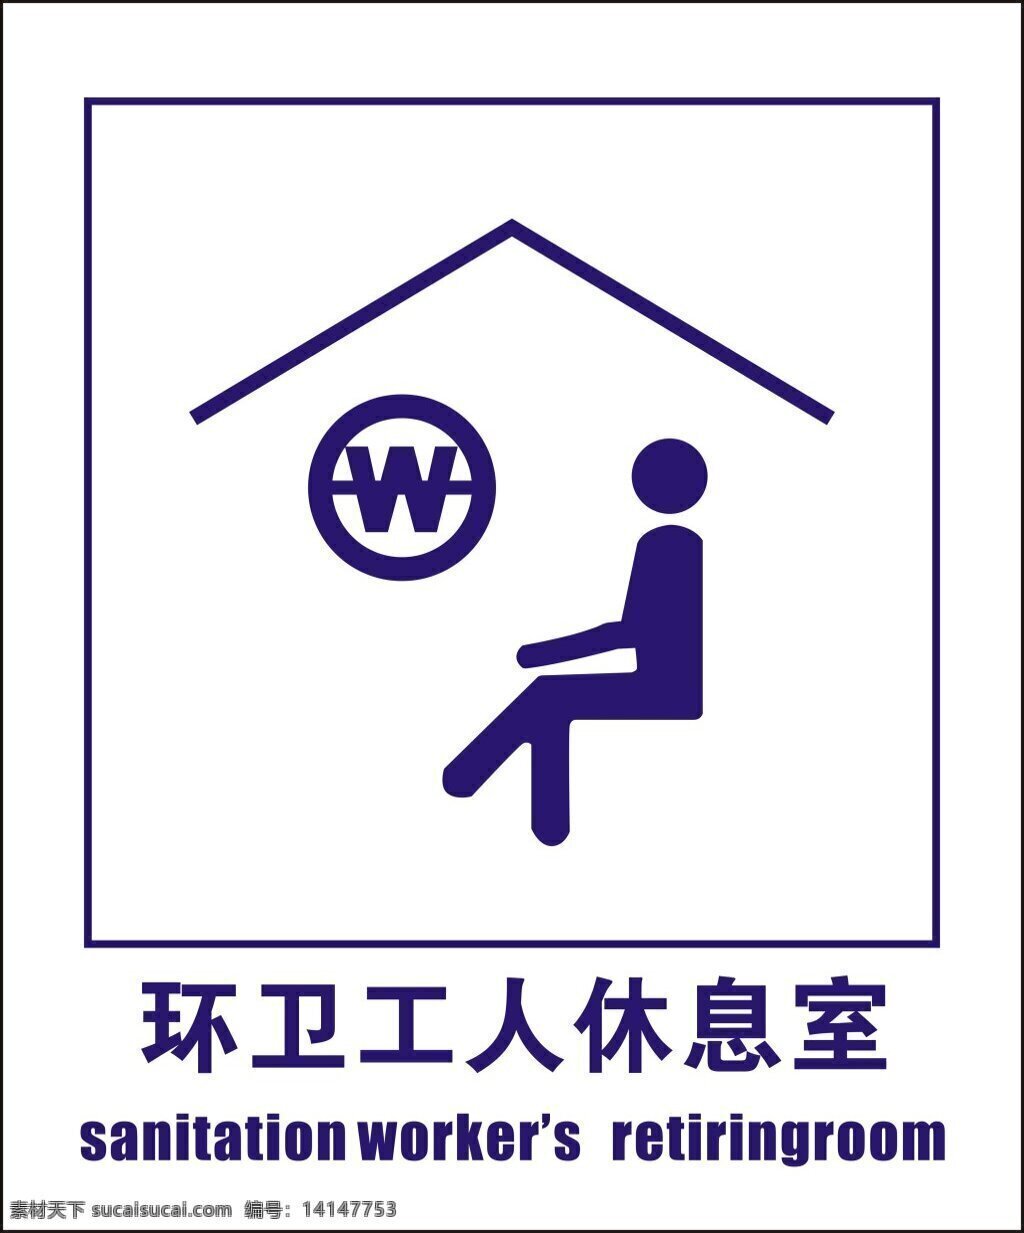 环卫 工人 休息室 标志 环卫工人标志 环卫标志 厕所标志 公共标志 环卫工人标识